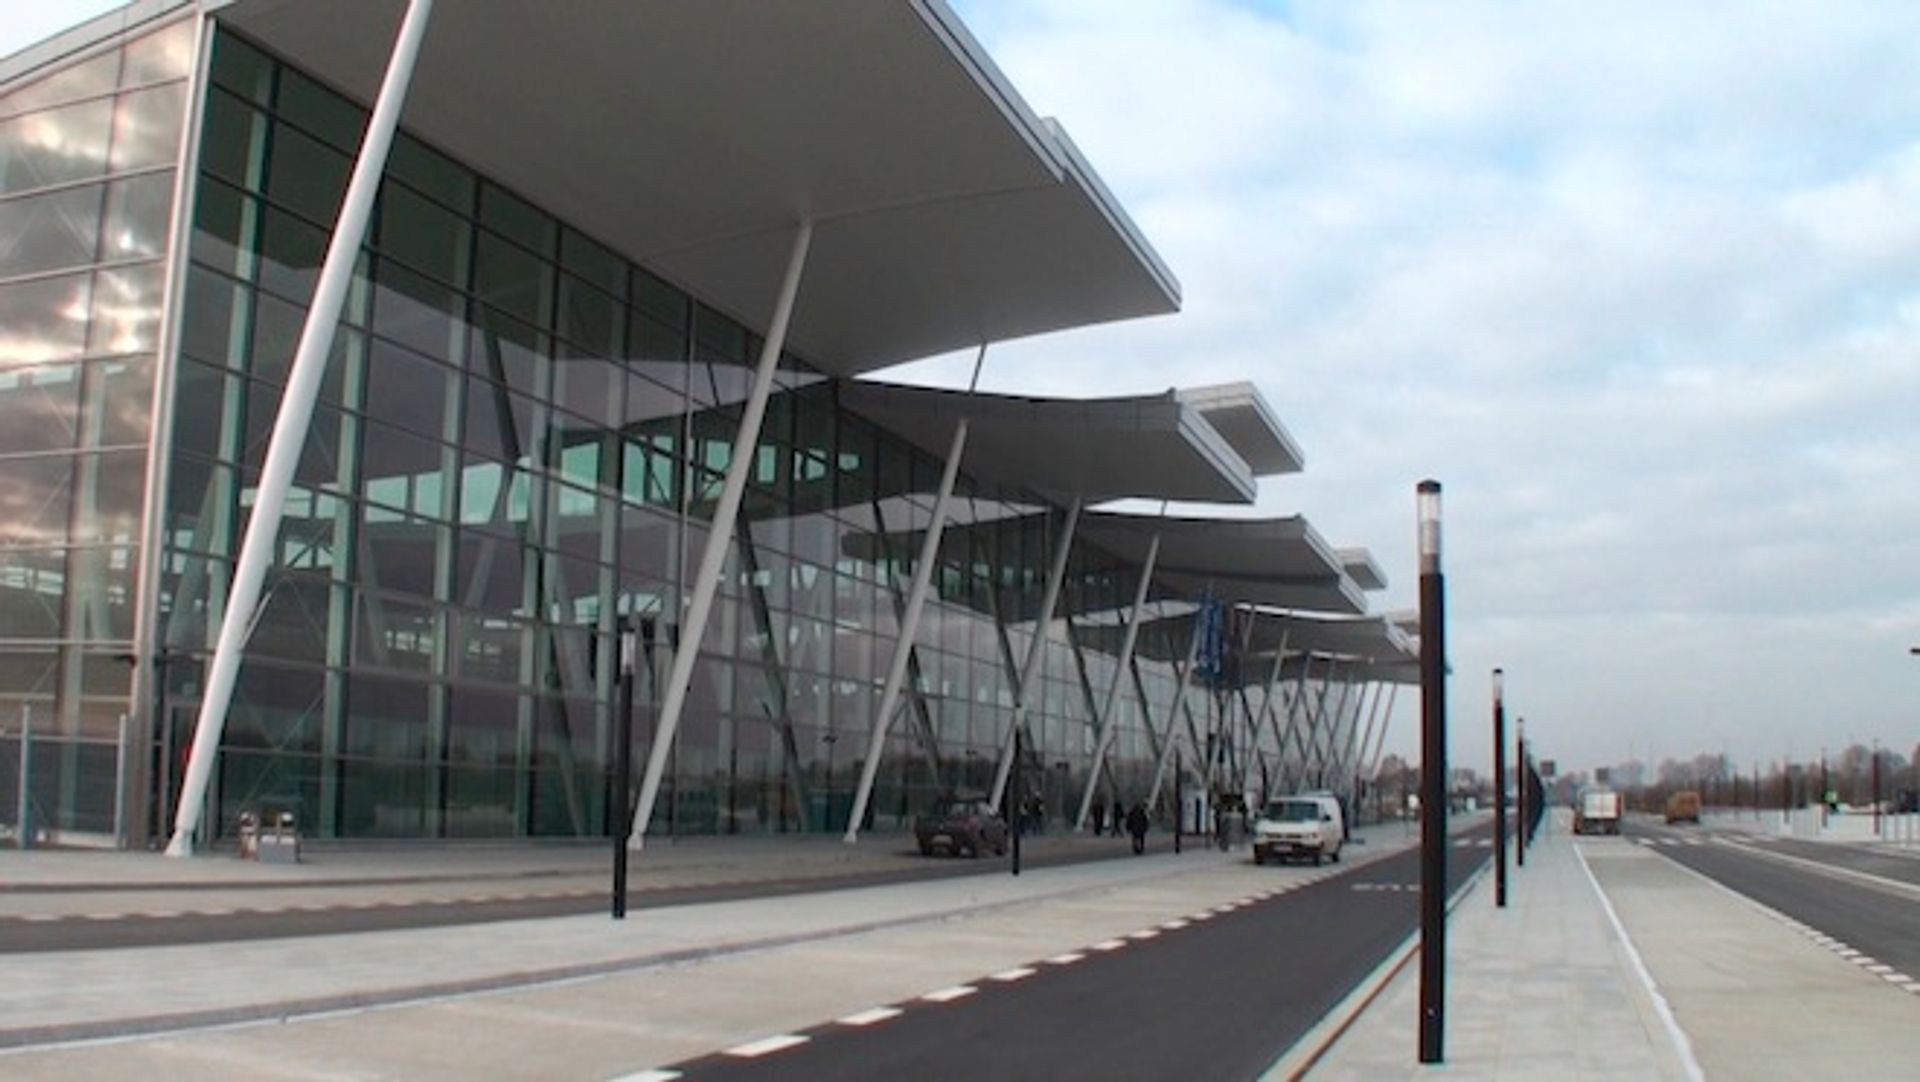  Wrocławianie obejrzą nowy terminal - w sobotę dni otwarte na lotnisku